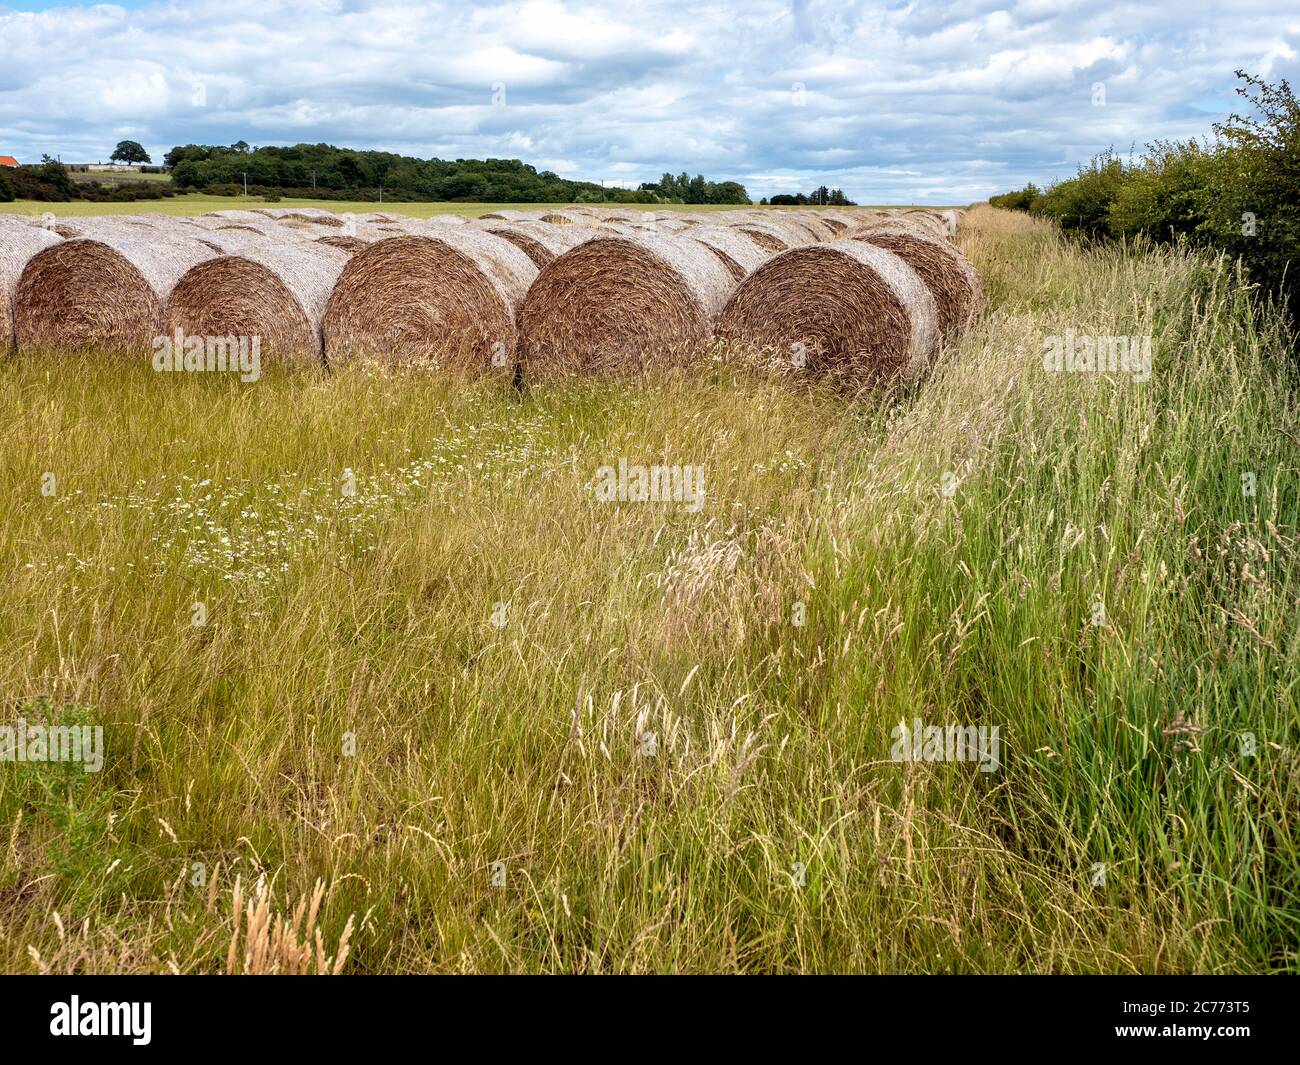 Balles de foin et chaume dans un champ, East Lothian, Écosse, Royaume-Uni. Banque D'Images